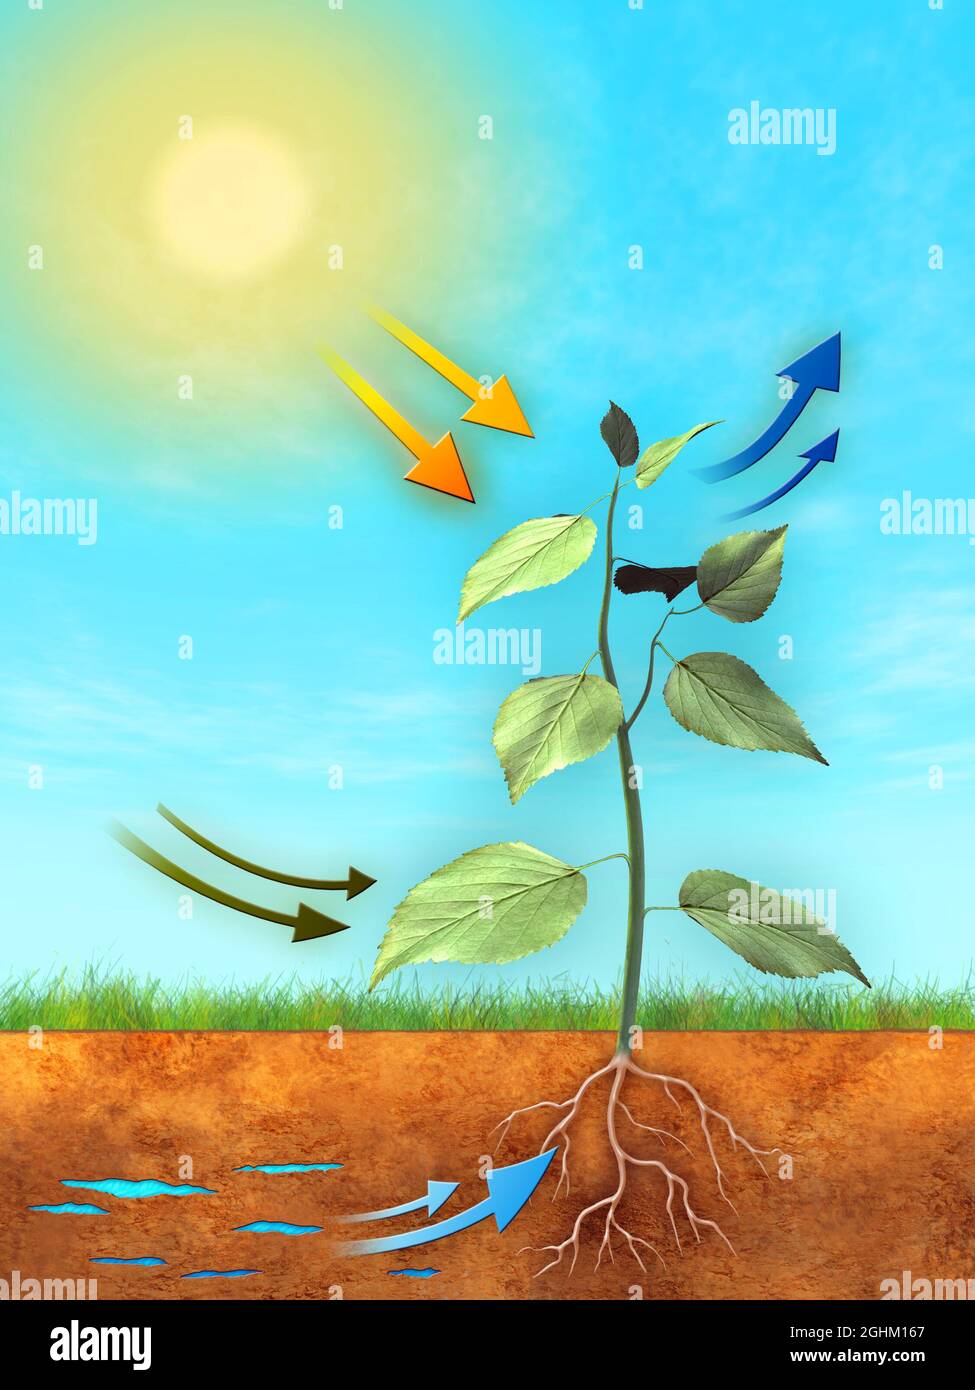 Grundlegendes Verfahren zur Photosynthese: Wasser, Kohlendioxid und Licht werden zur Produktion von Sauerstoff und Zucker verwendet. Digitale Illustration. Stockfoto